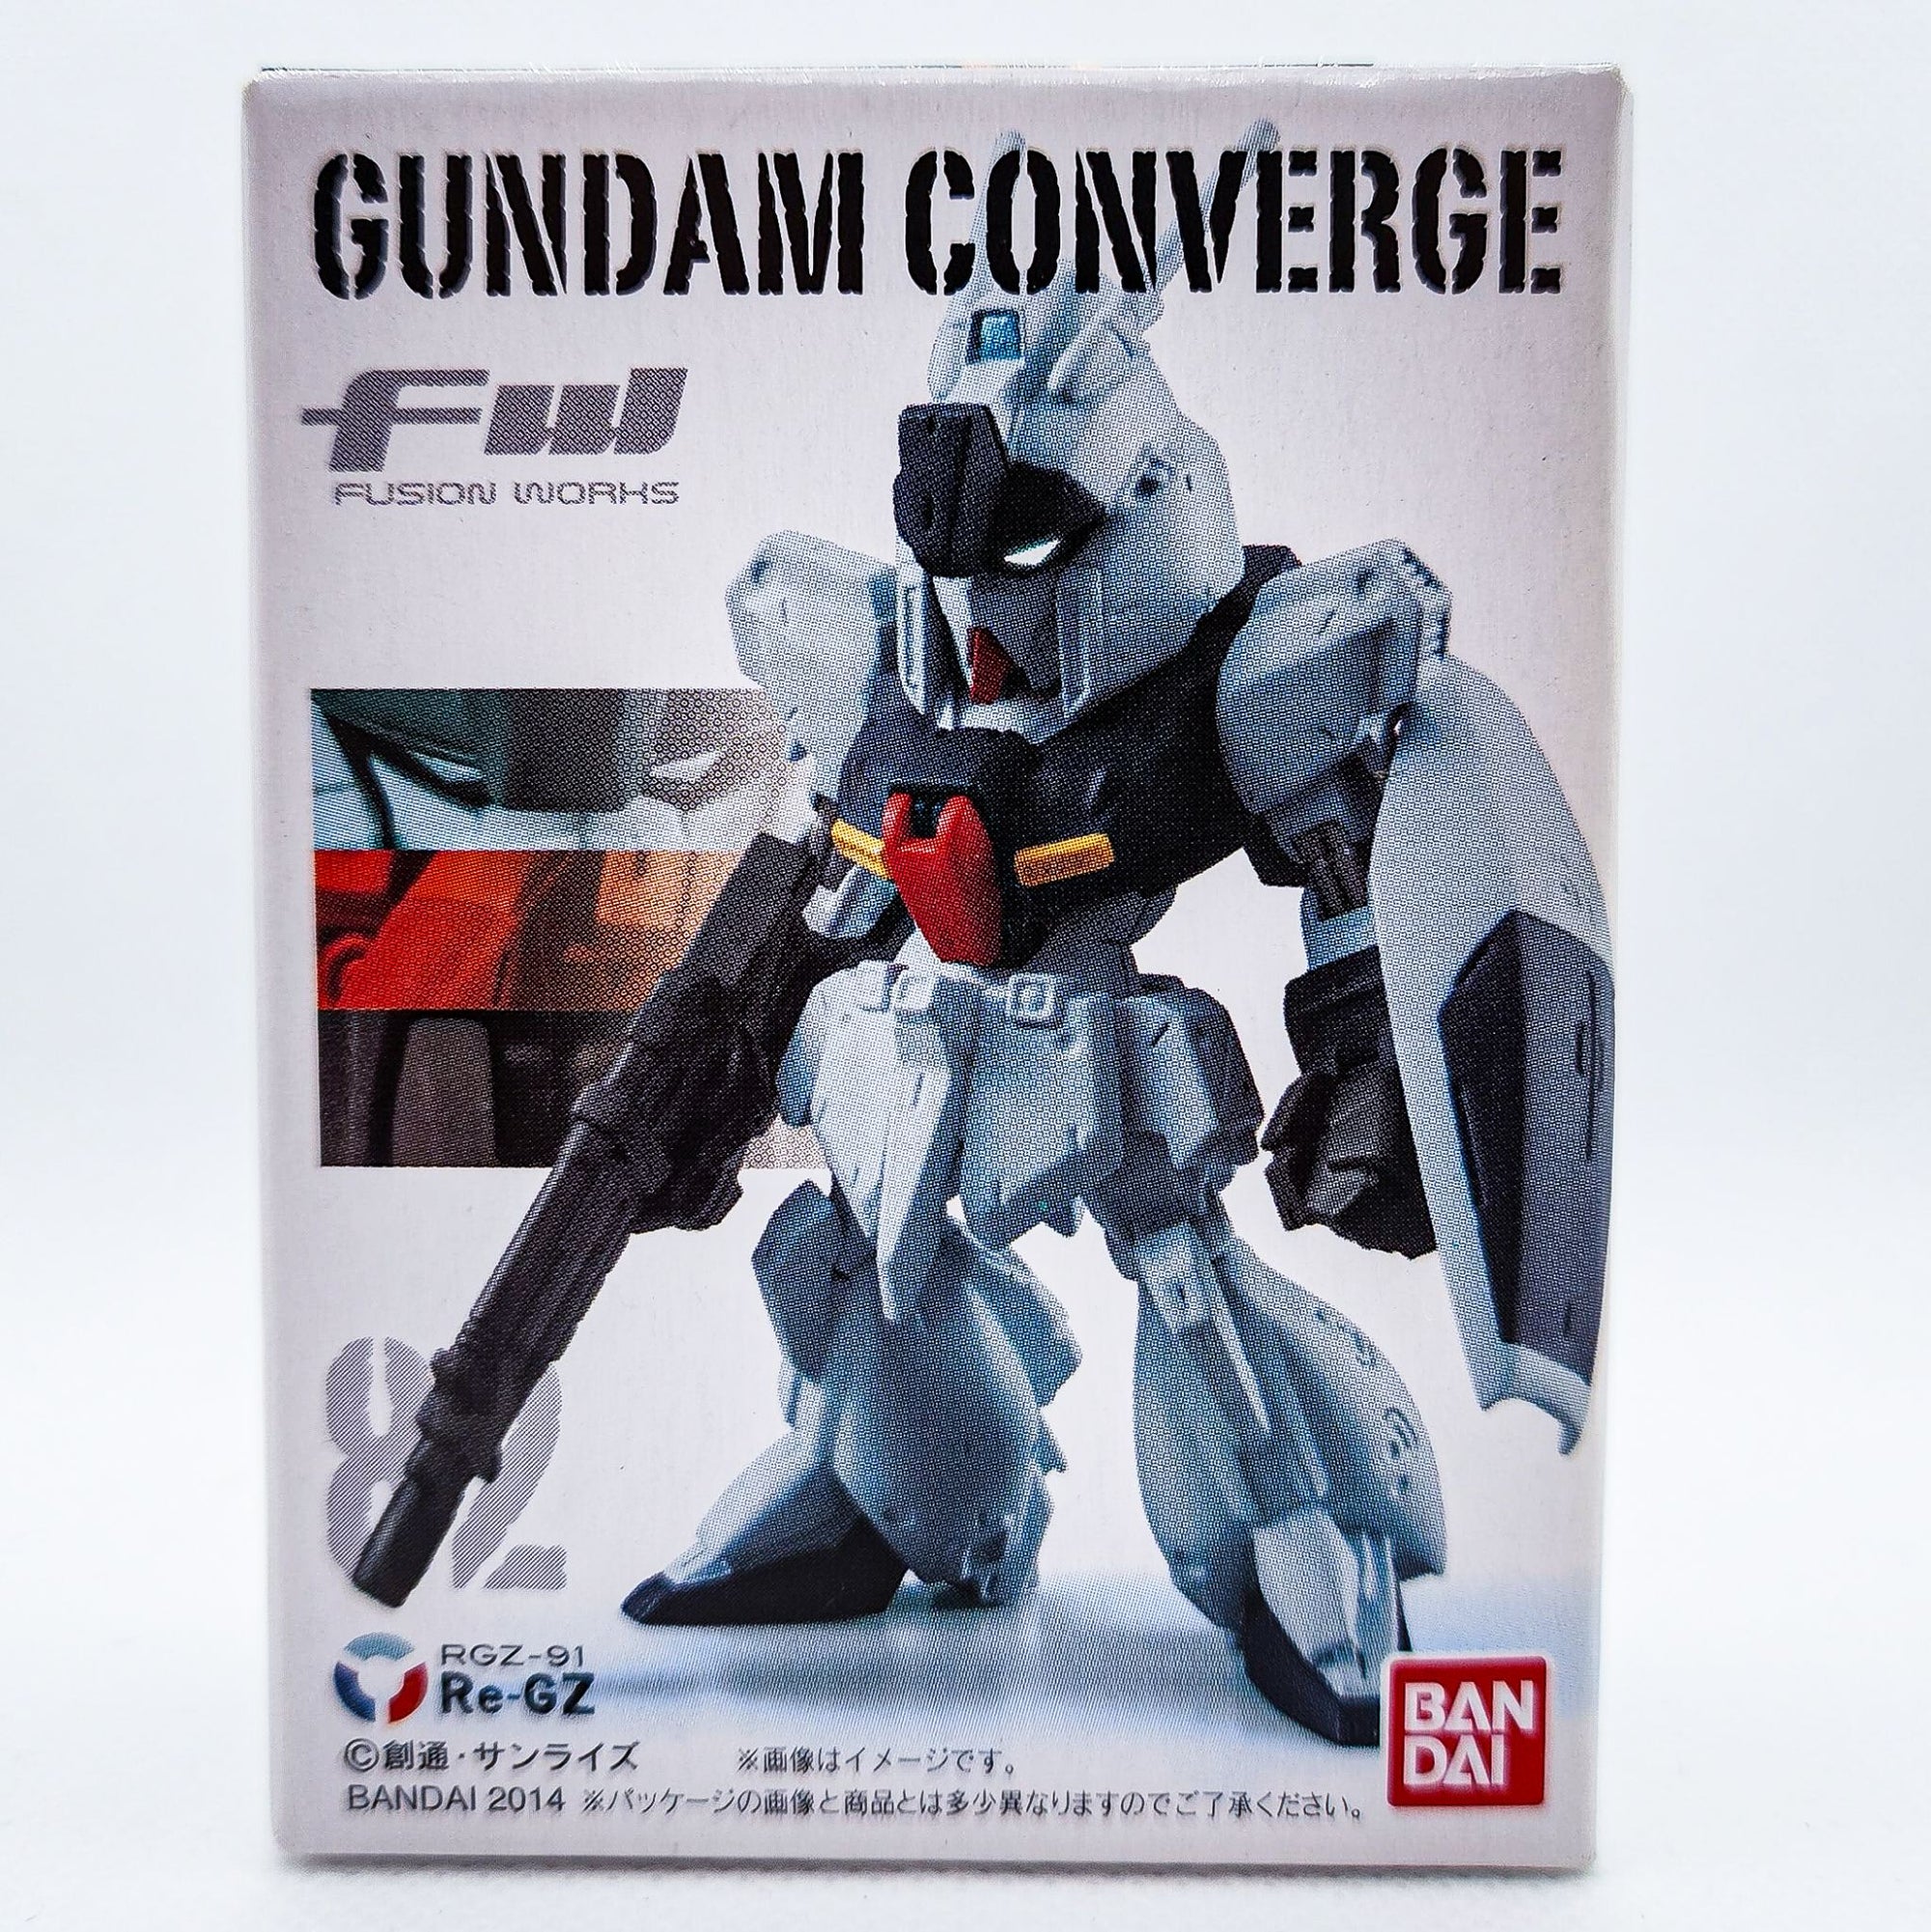 Gundam Converge #82 RE-GZ by Bandai - 1